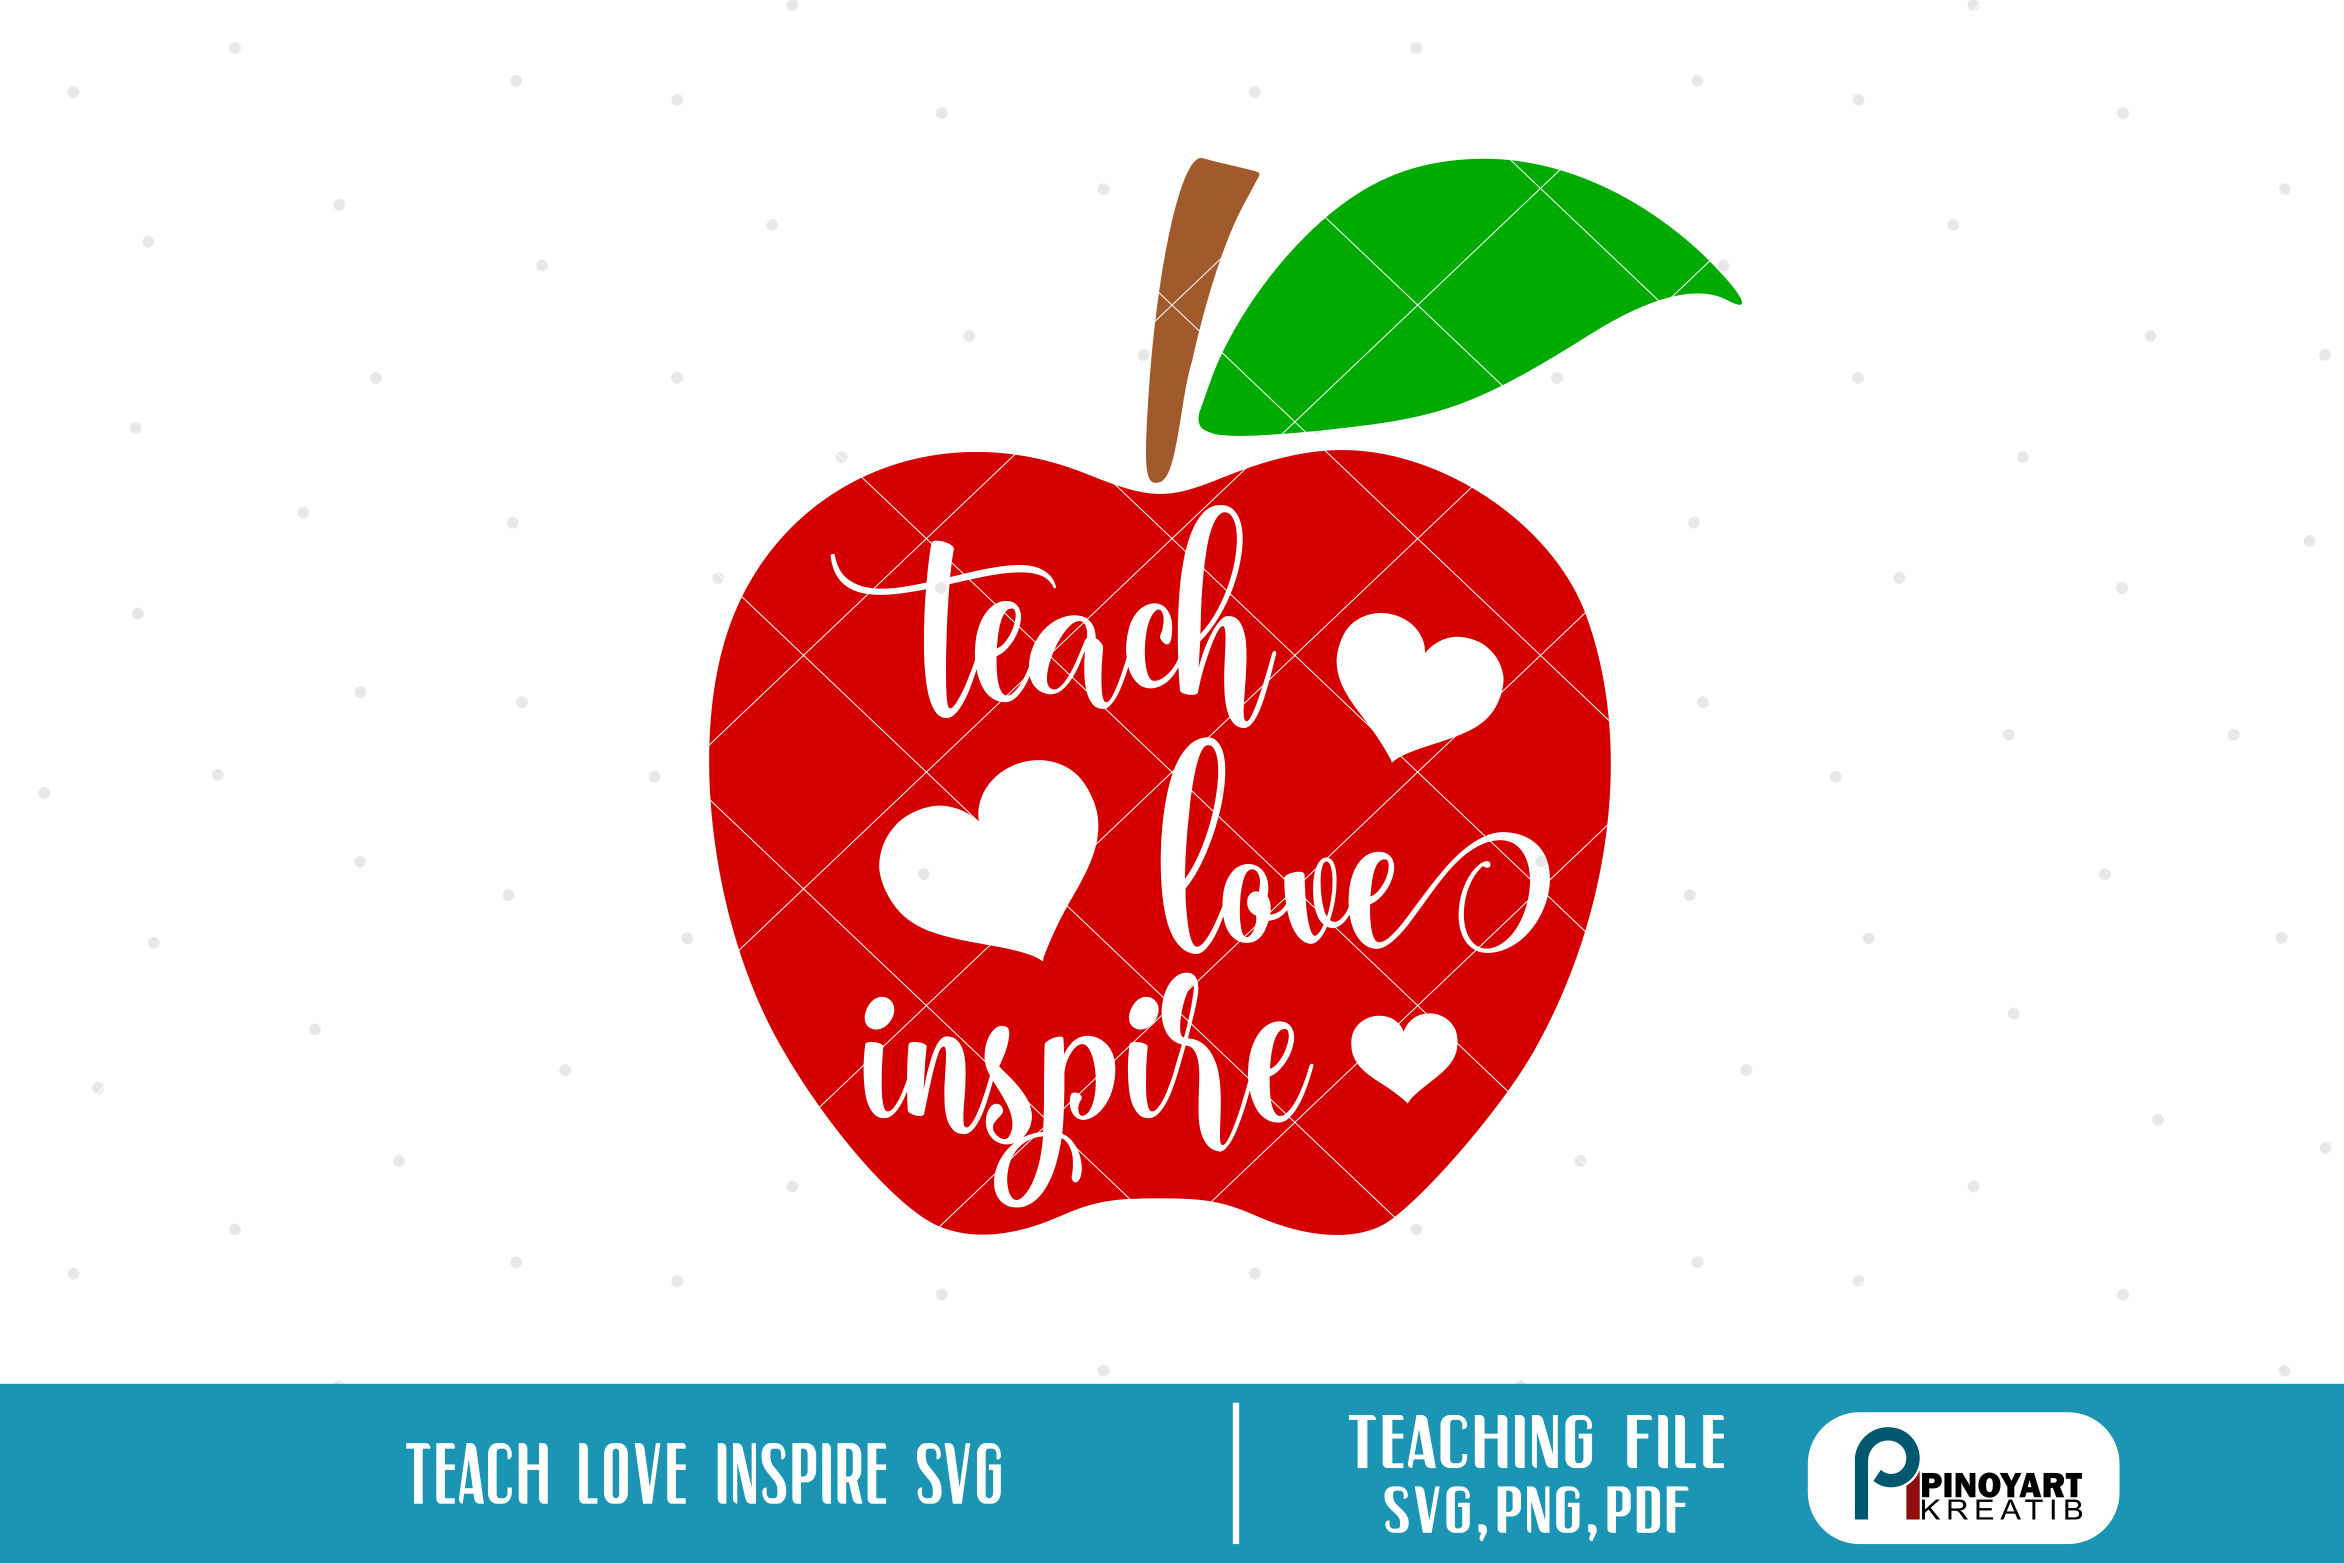 Download teaching svg, teacher svg, teach love inspire svg, teach ...